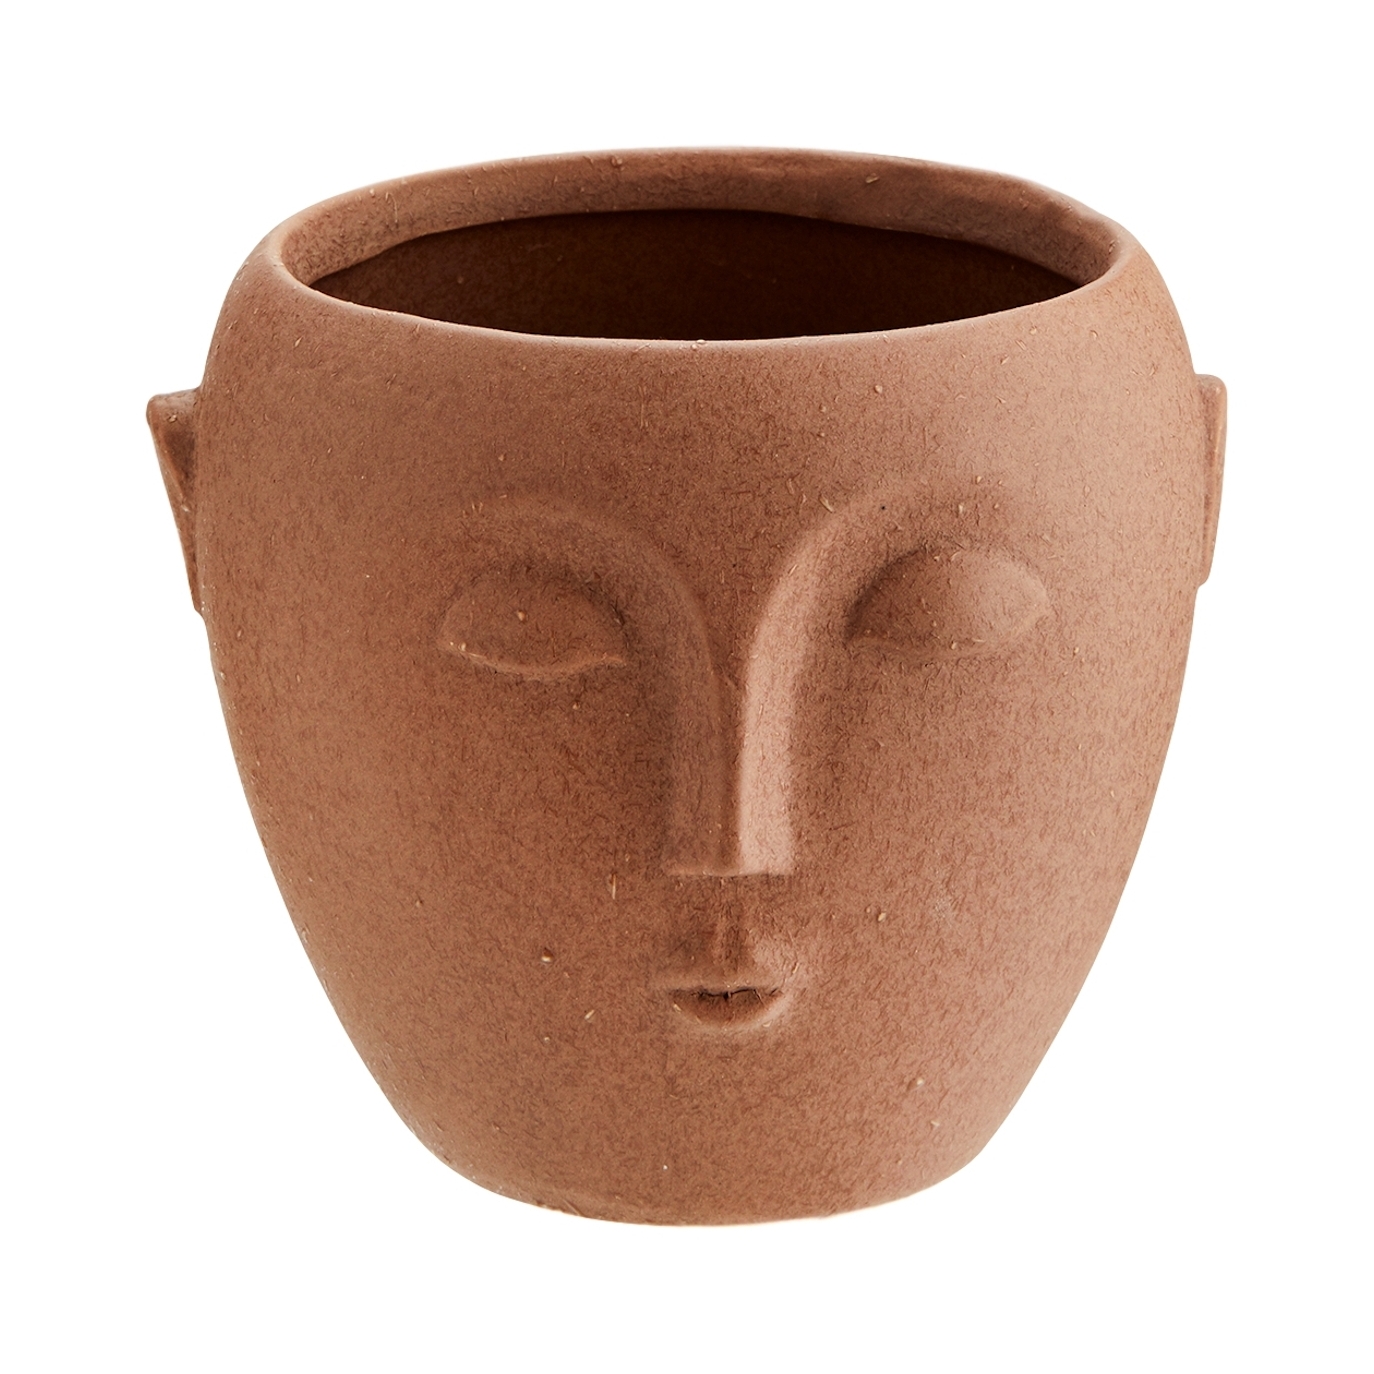 Madam Stoltz - Flower Pot With Face Imprint Brown 14x12 - Vases et ornements décoratifs - HY14827-13 